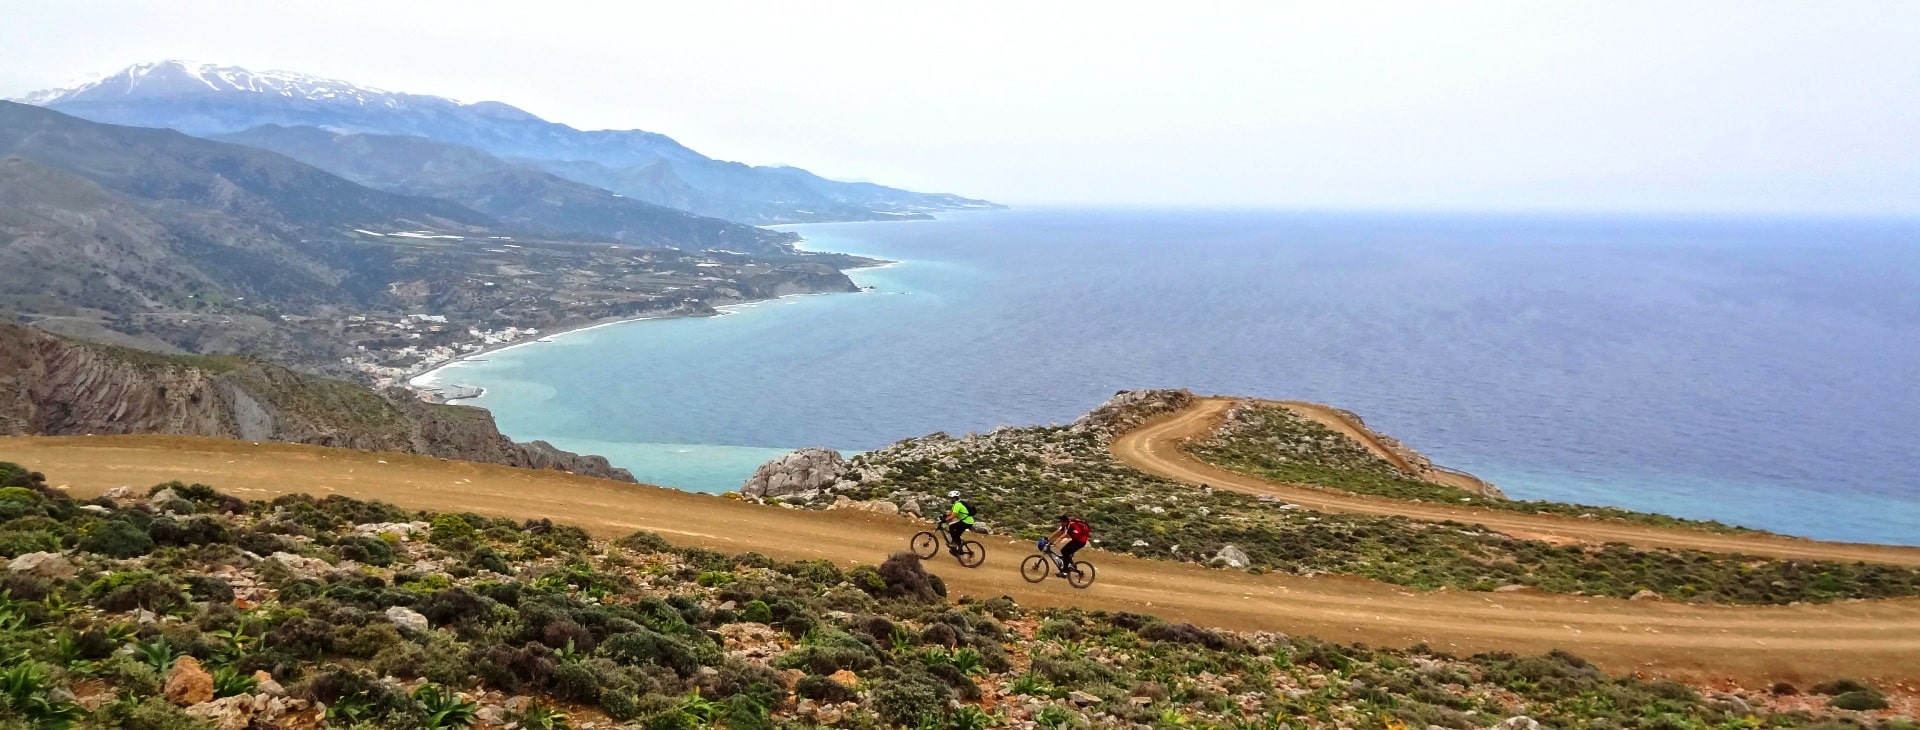 Apomoni bike tour Crete Agios Nikitas asterousia mountains cyclingcreta2